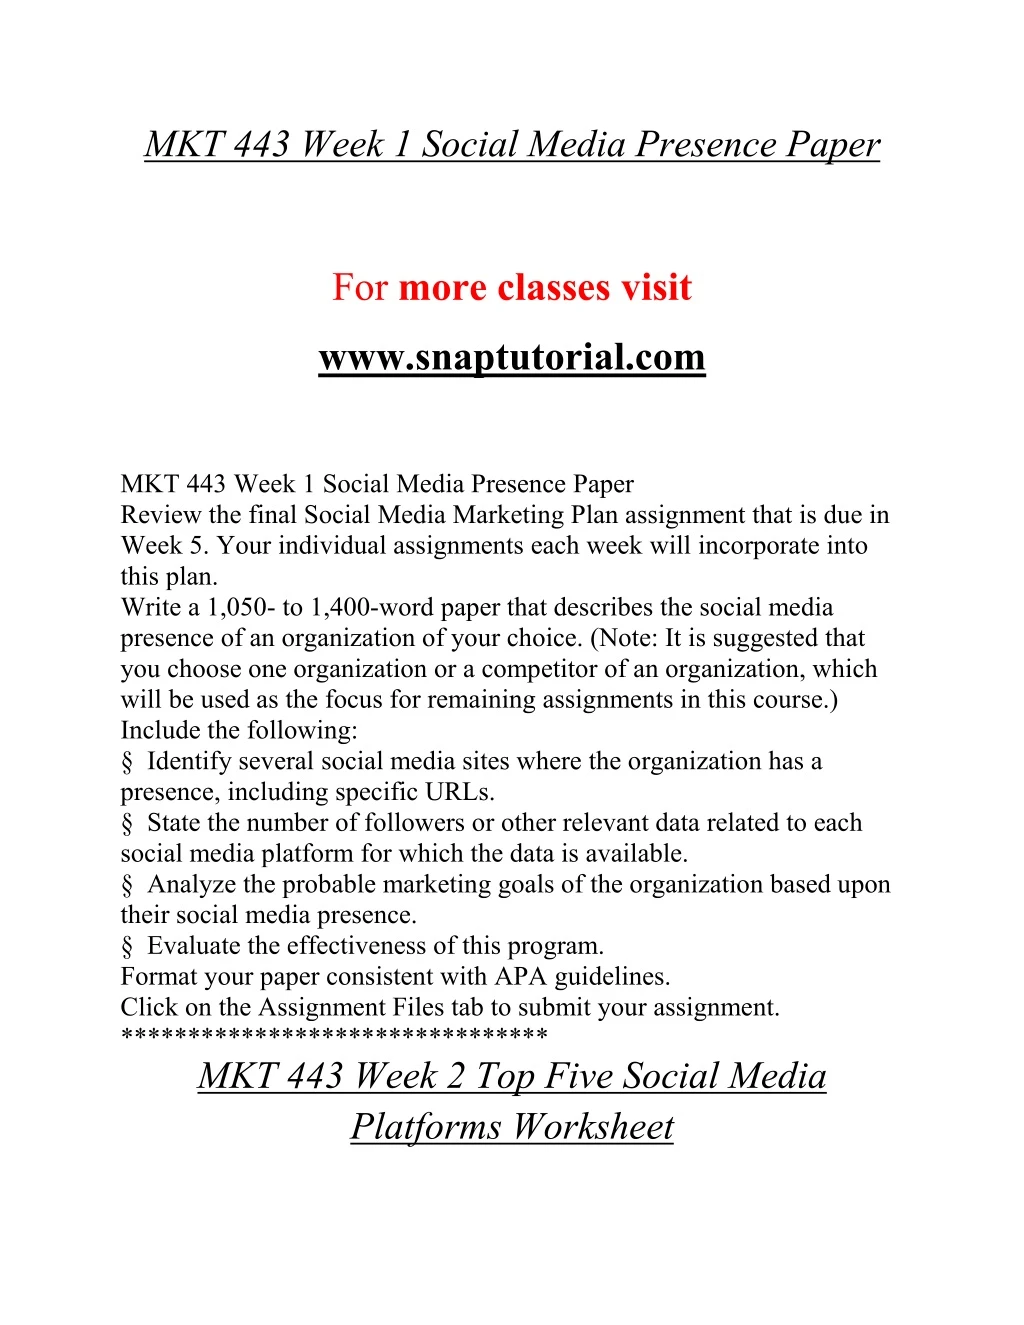 mkt 443 week 1 social media presence paper